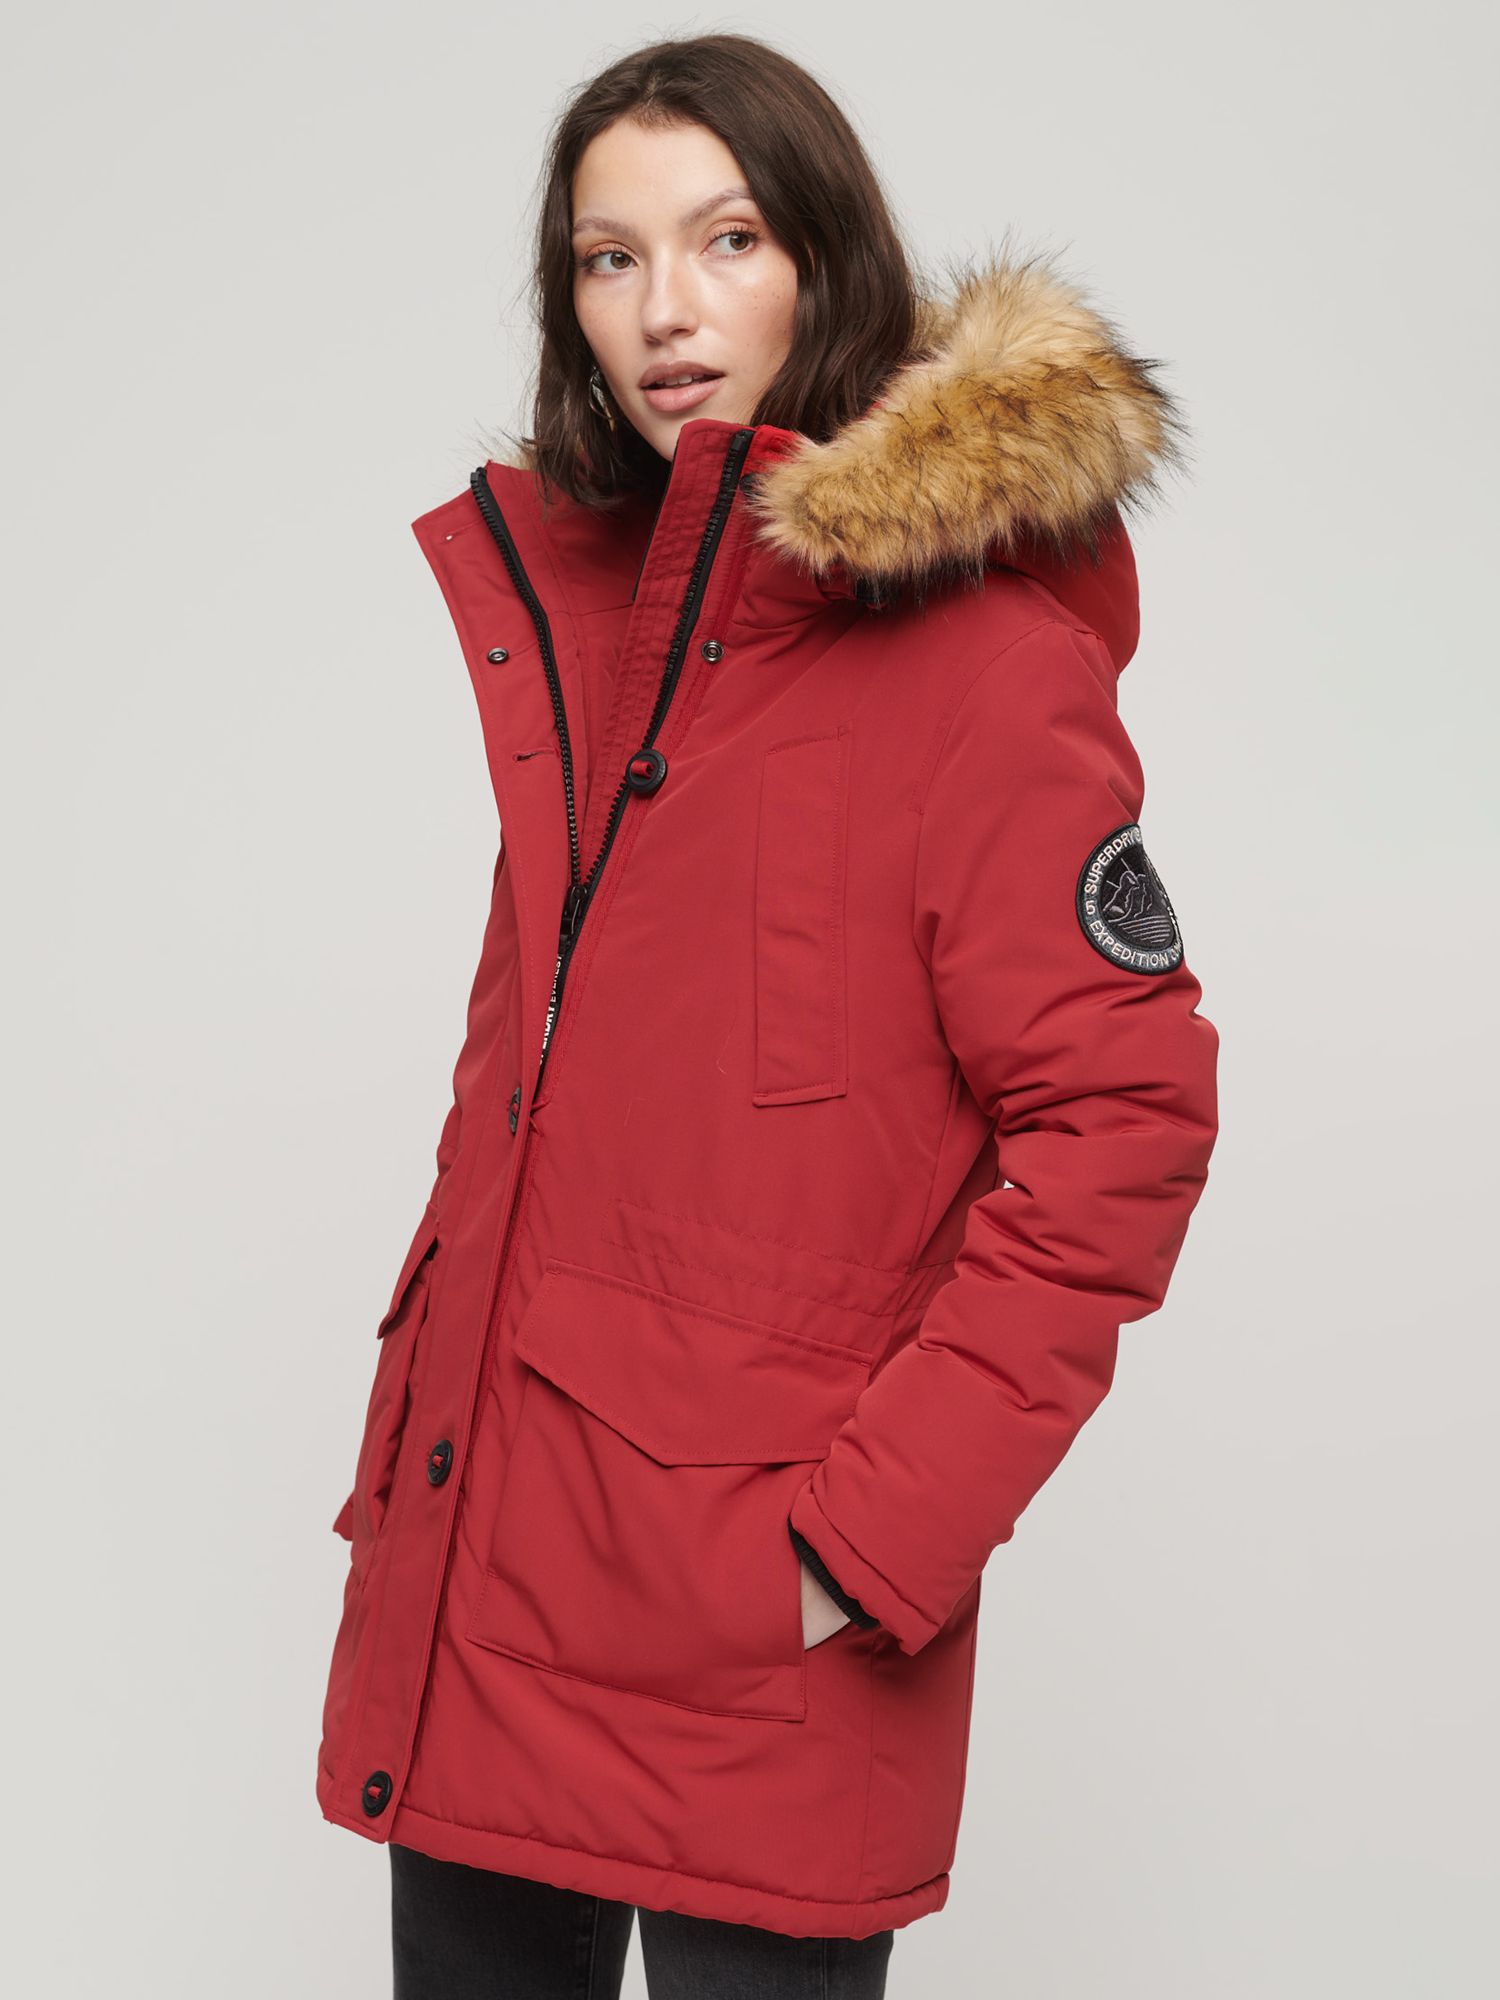 Superdry Everest Parka Coat, Deep Red at John Lewis & Partners